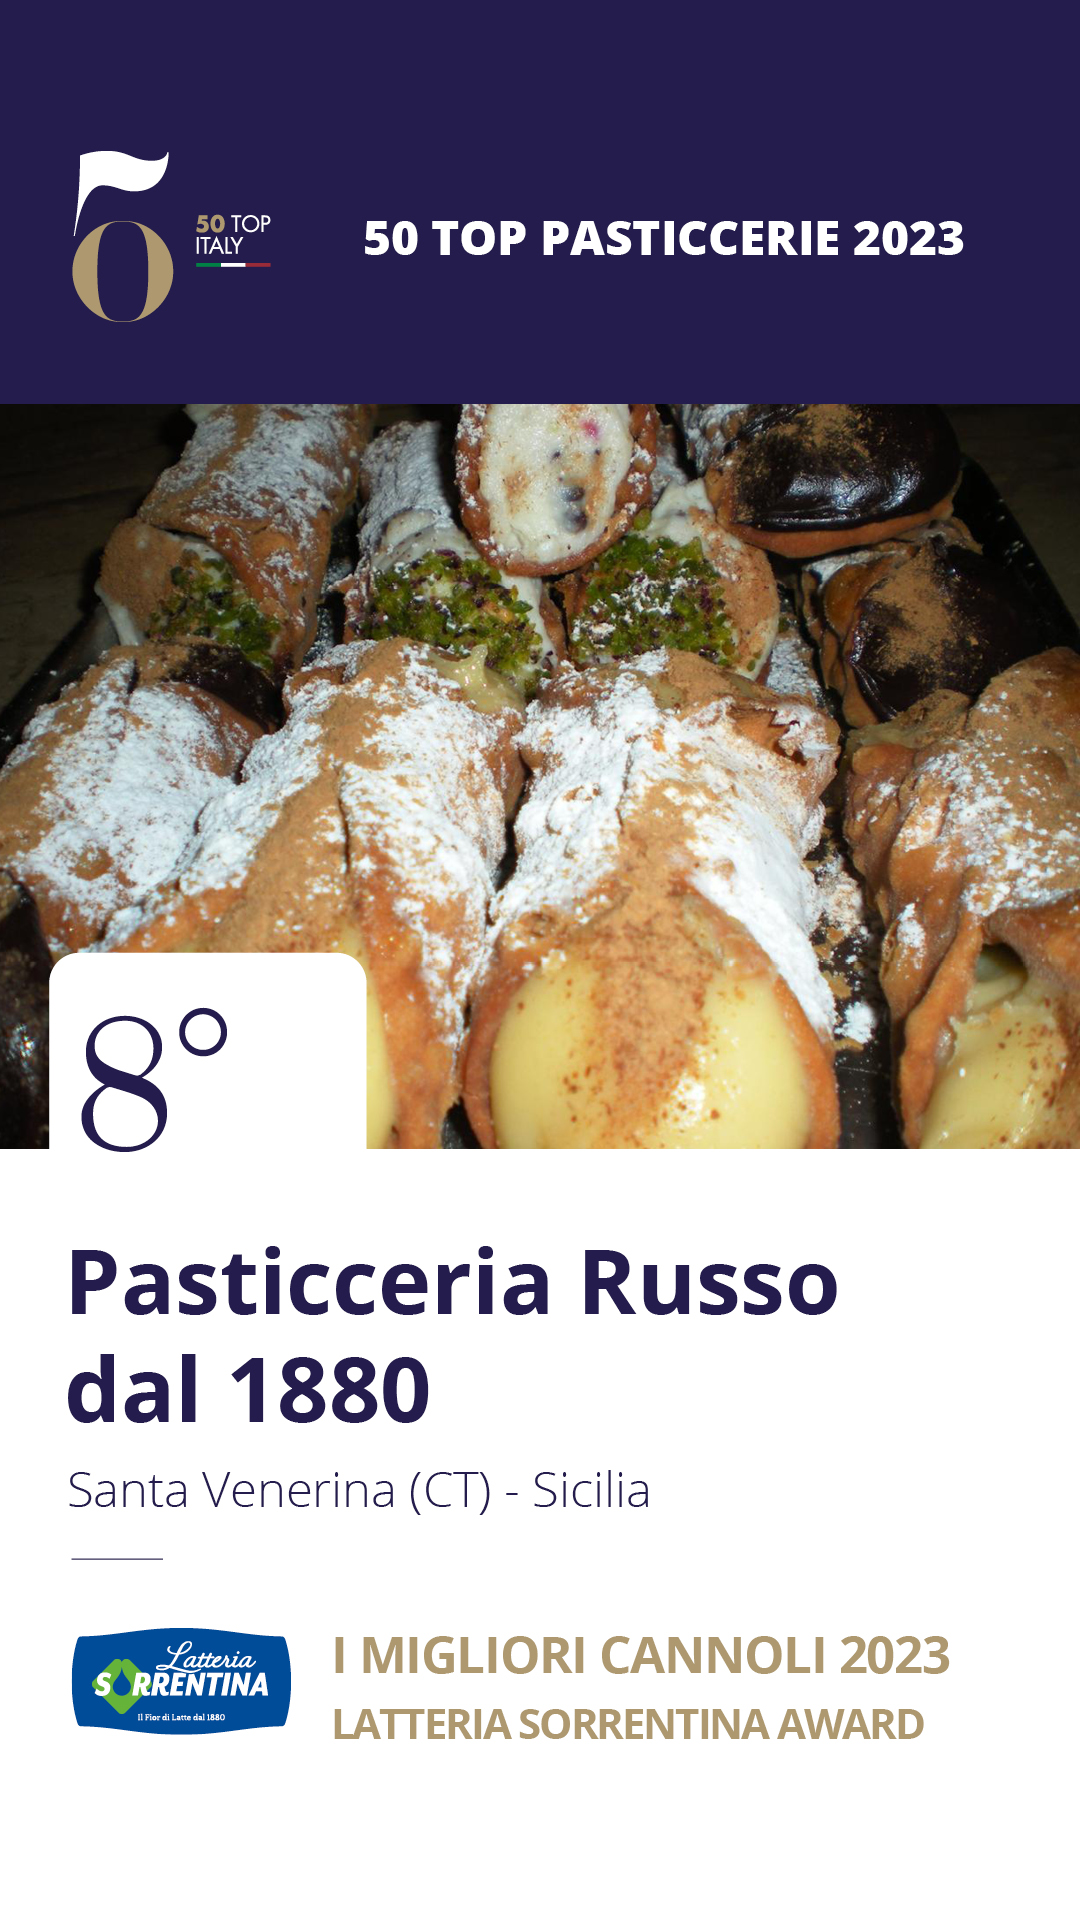 8. Pasticceria Russo dal 1880 - Santa Venerina (CT), Sicilia